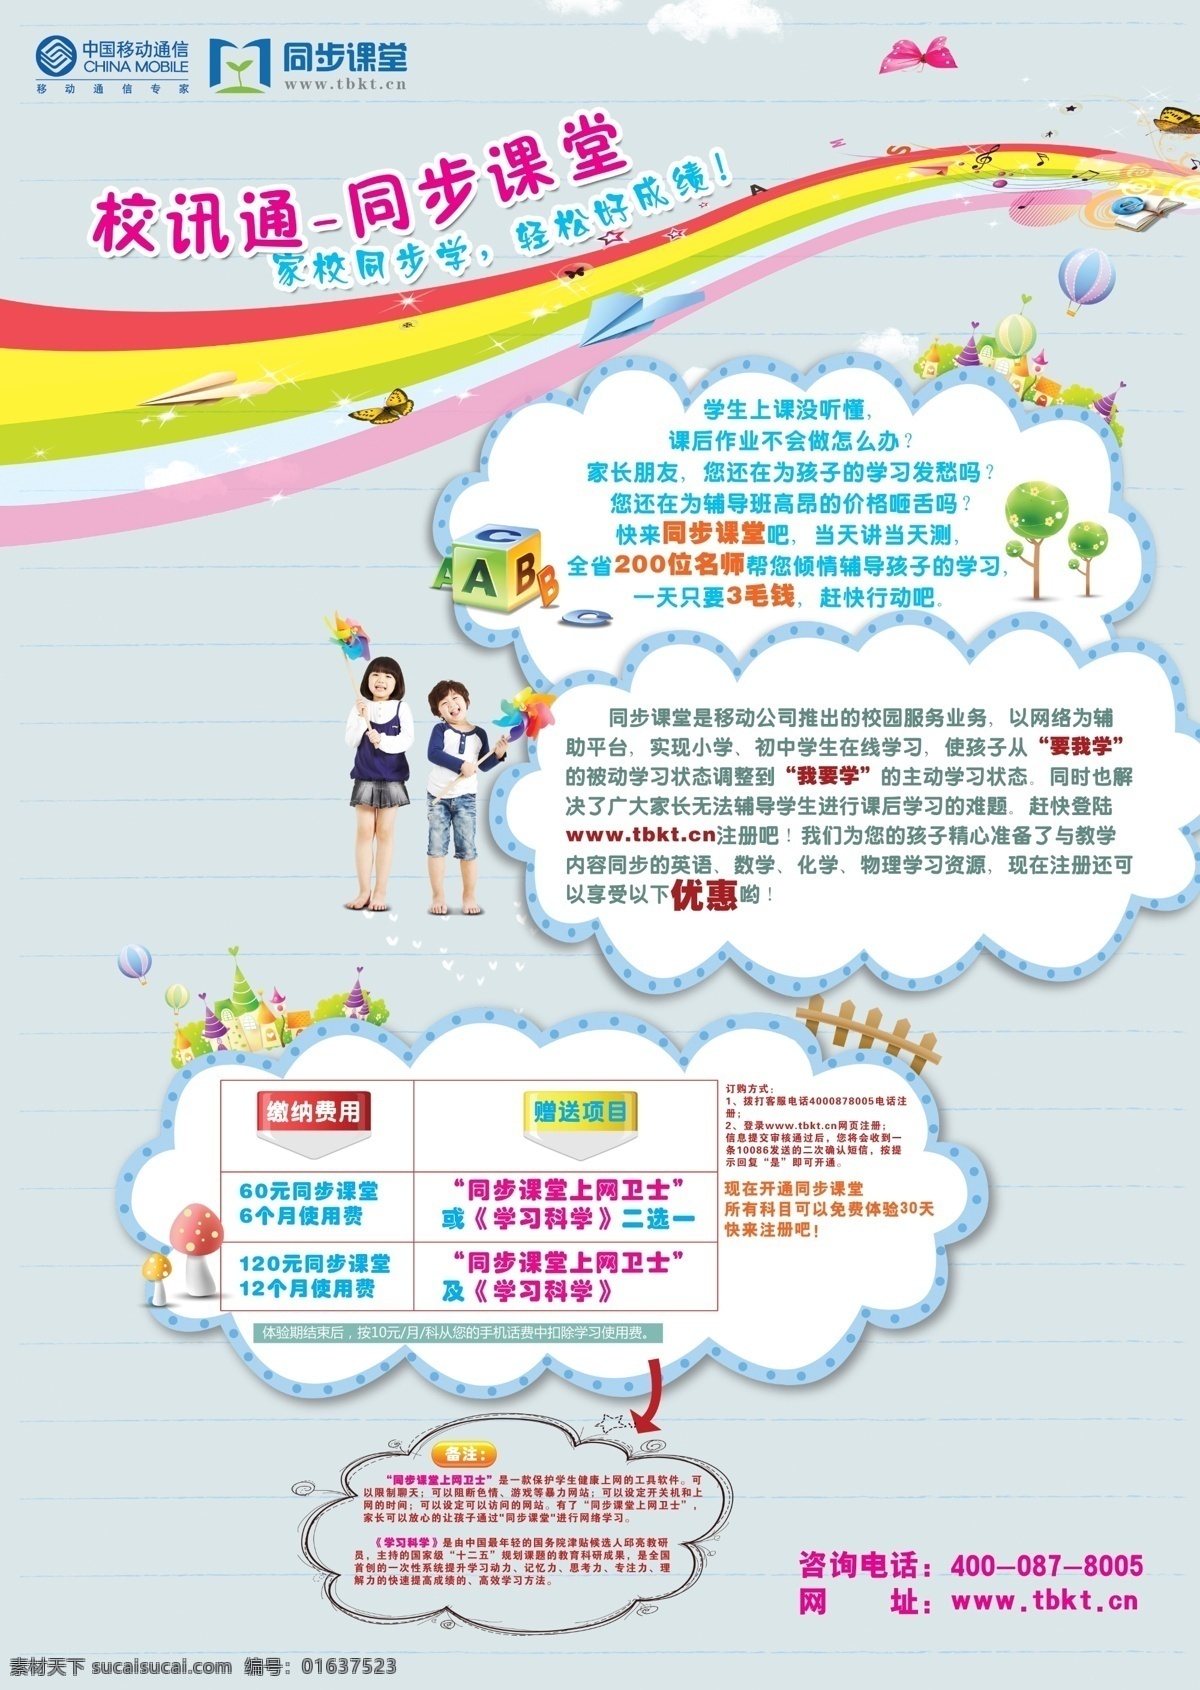 校 讯通 海报 模板 源文件 教育 网页模板 校讯通 学校教育 中文模版 家校互动 其他海报设计